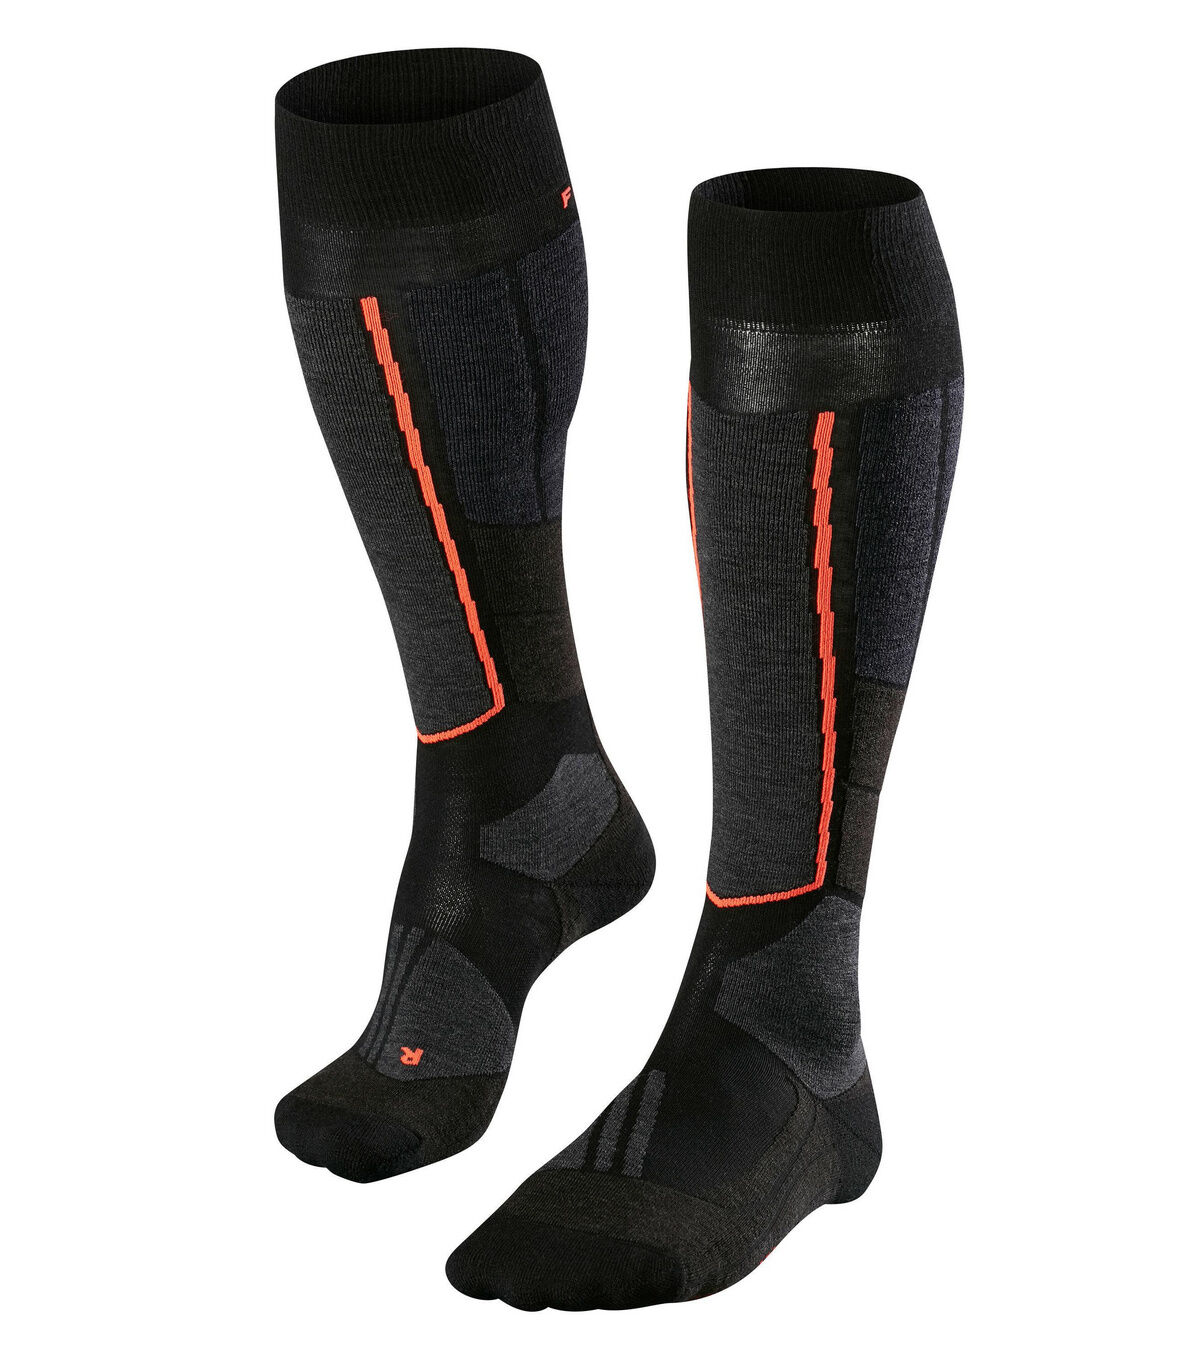 Falke ST4 Wool - Ski socks - Women's